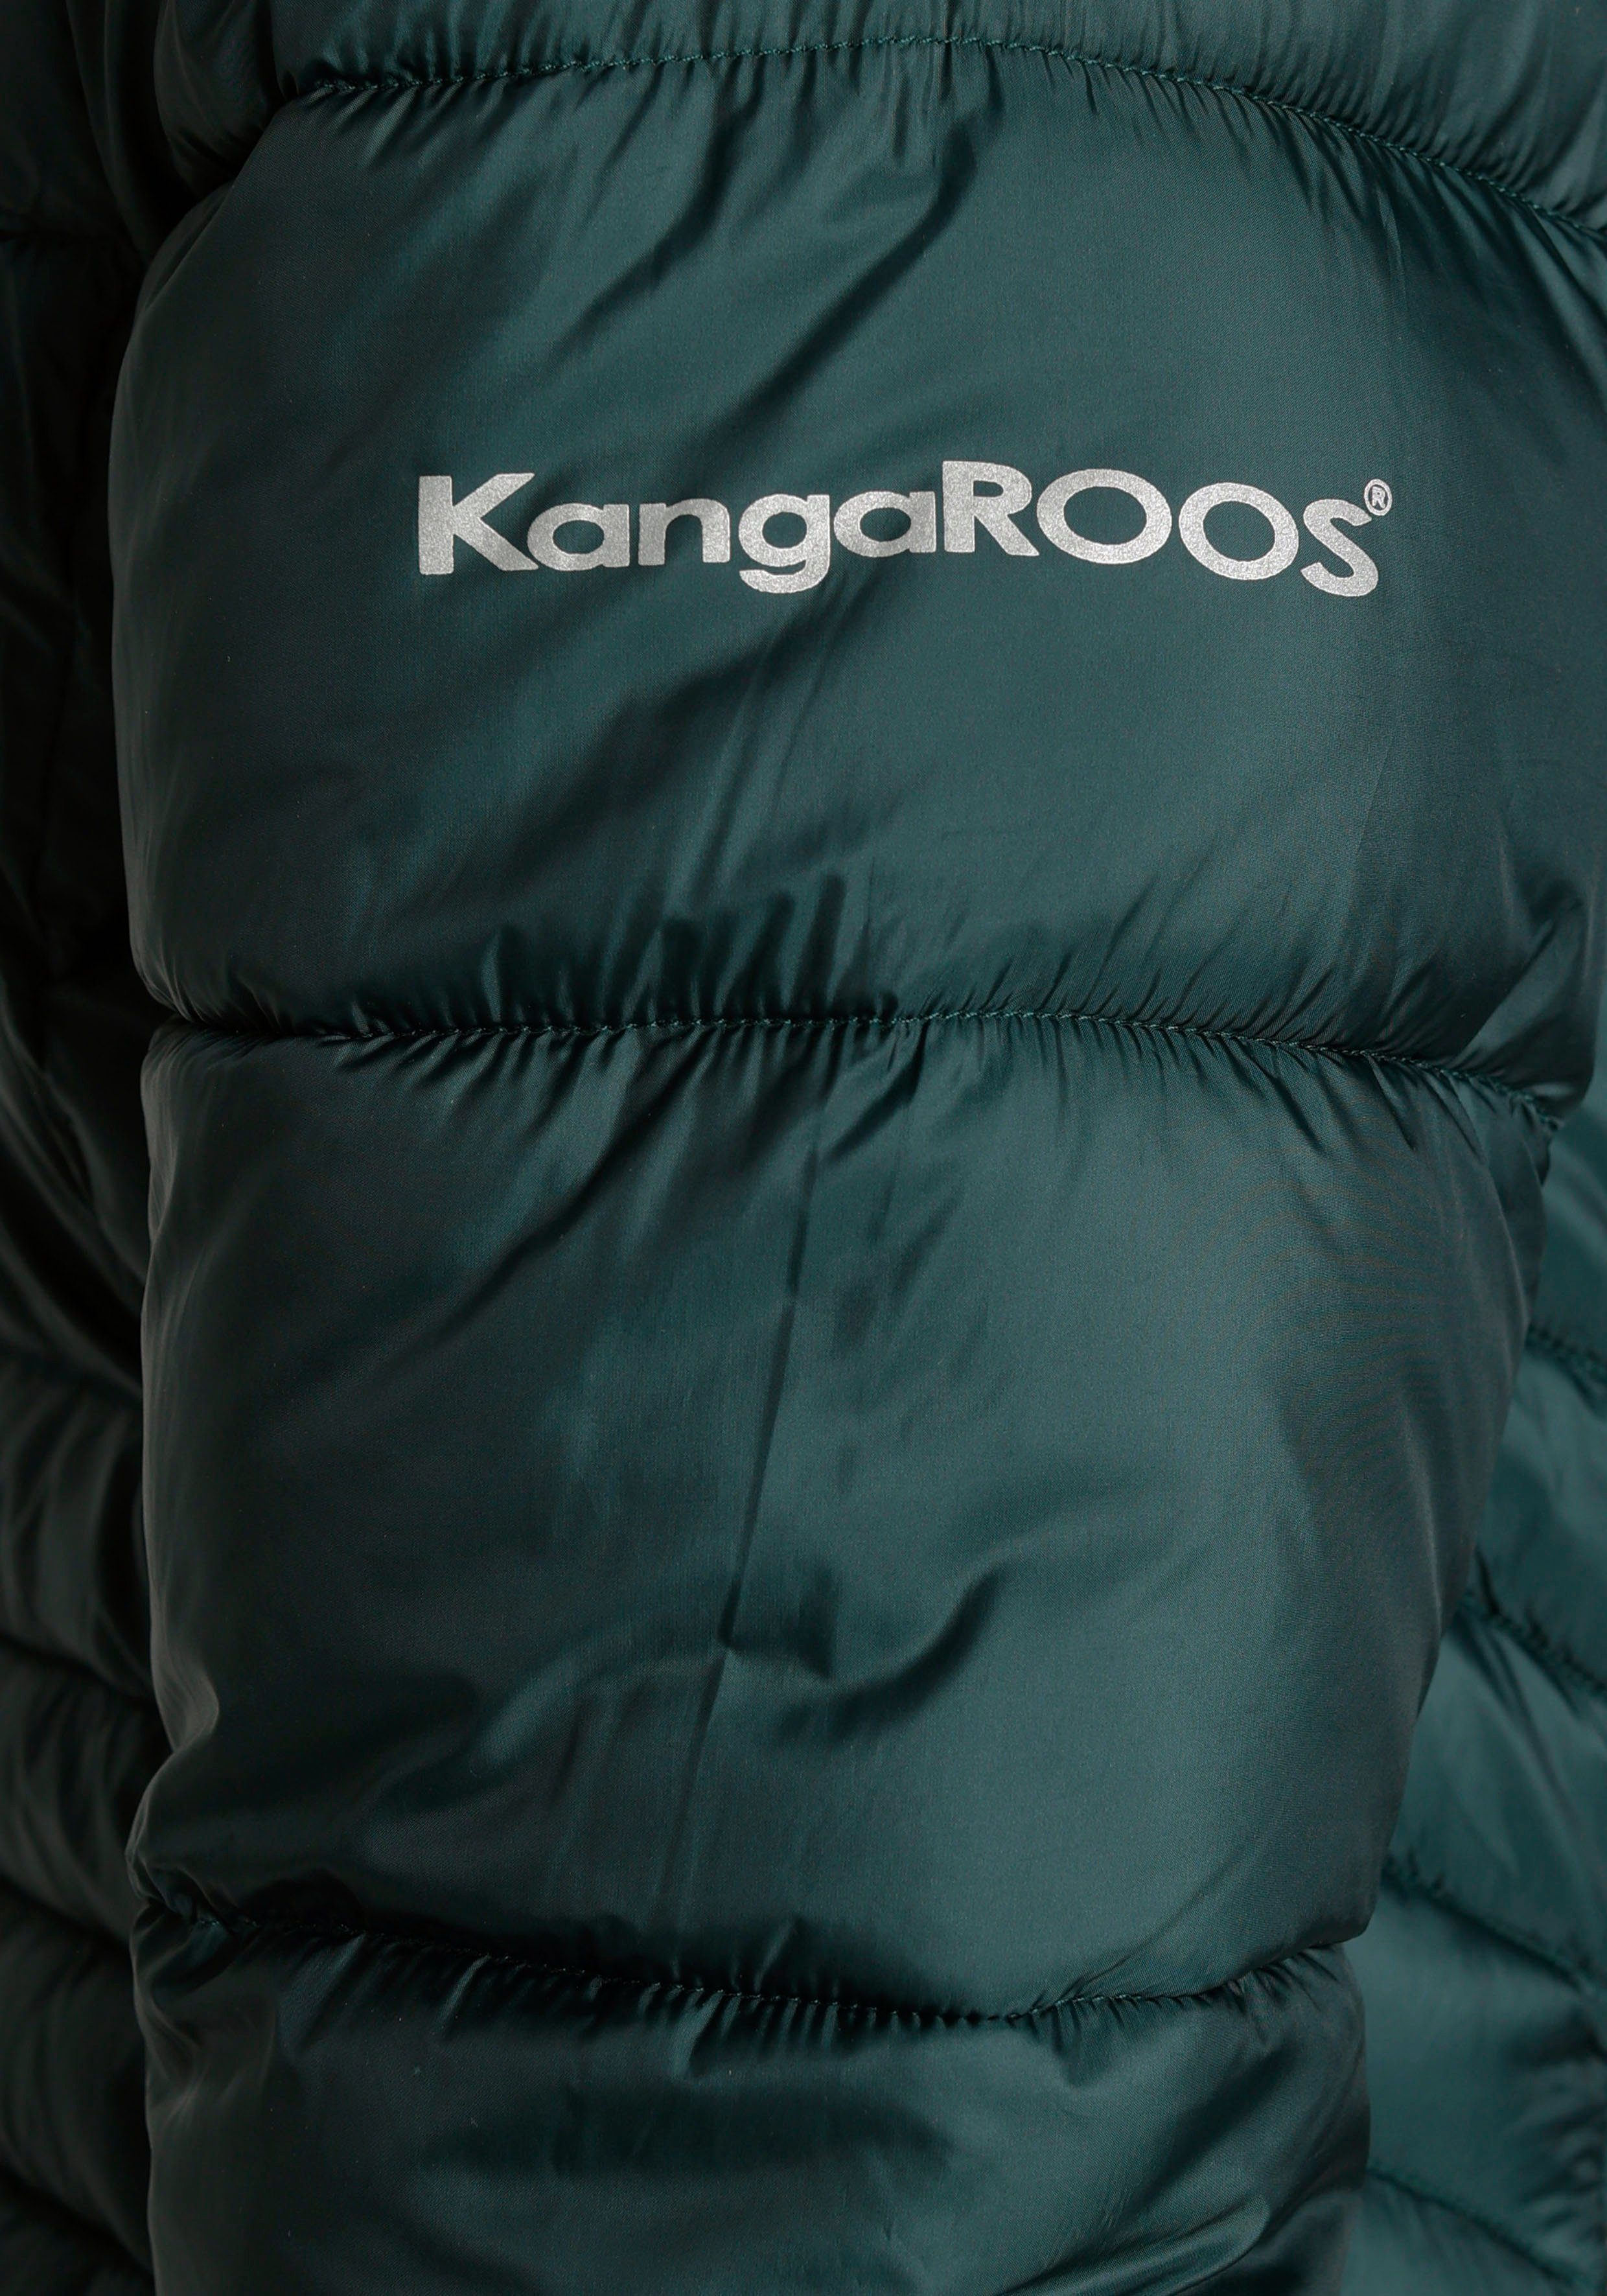 KangaROOS abnehmbarer nachhaltigem darkgreen Kapuze aus mit Material) Steppmantel (Jacke